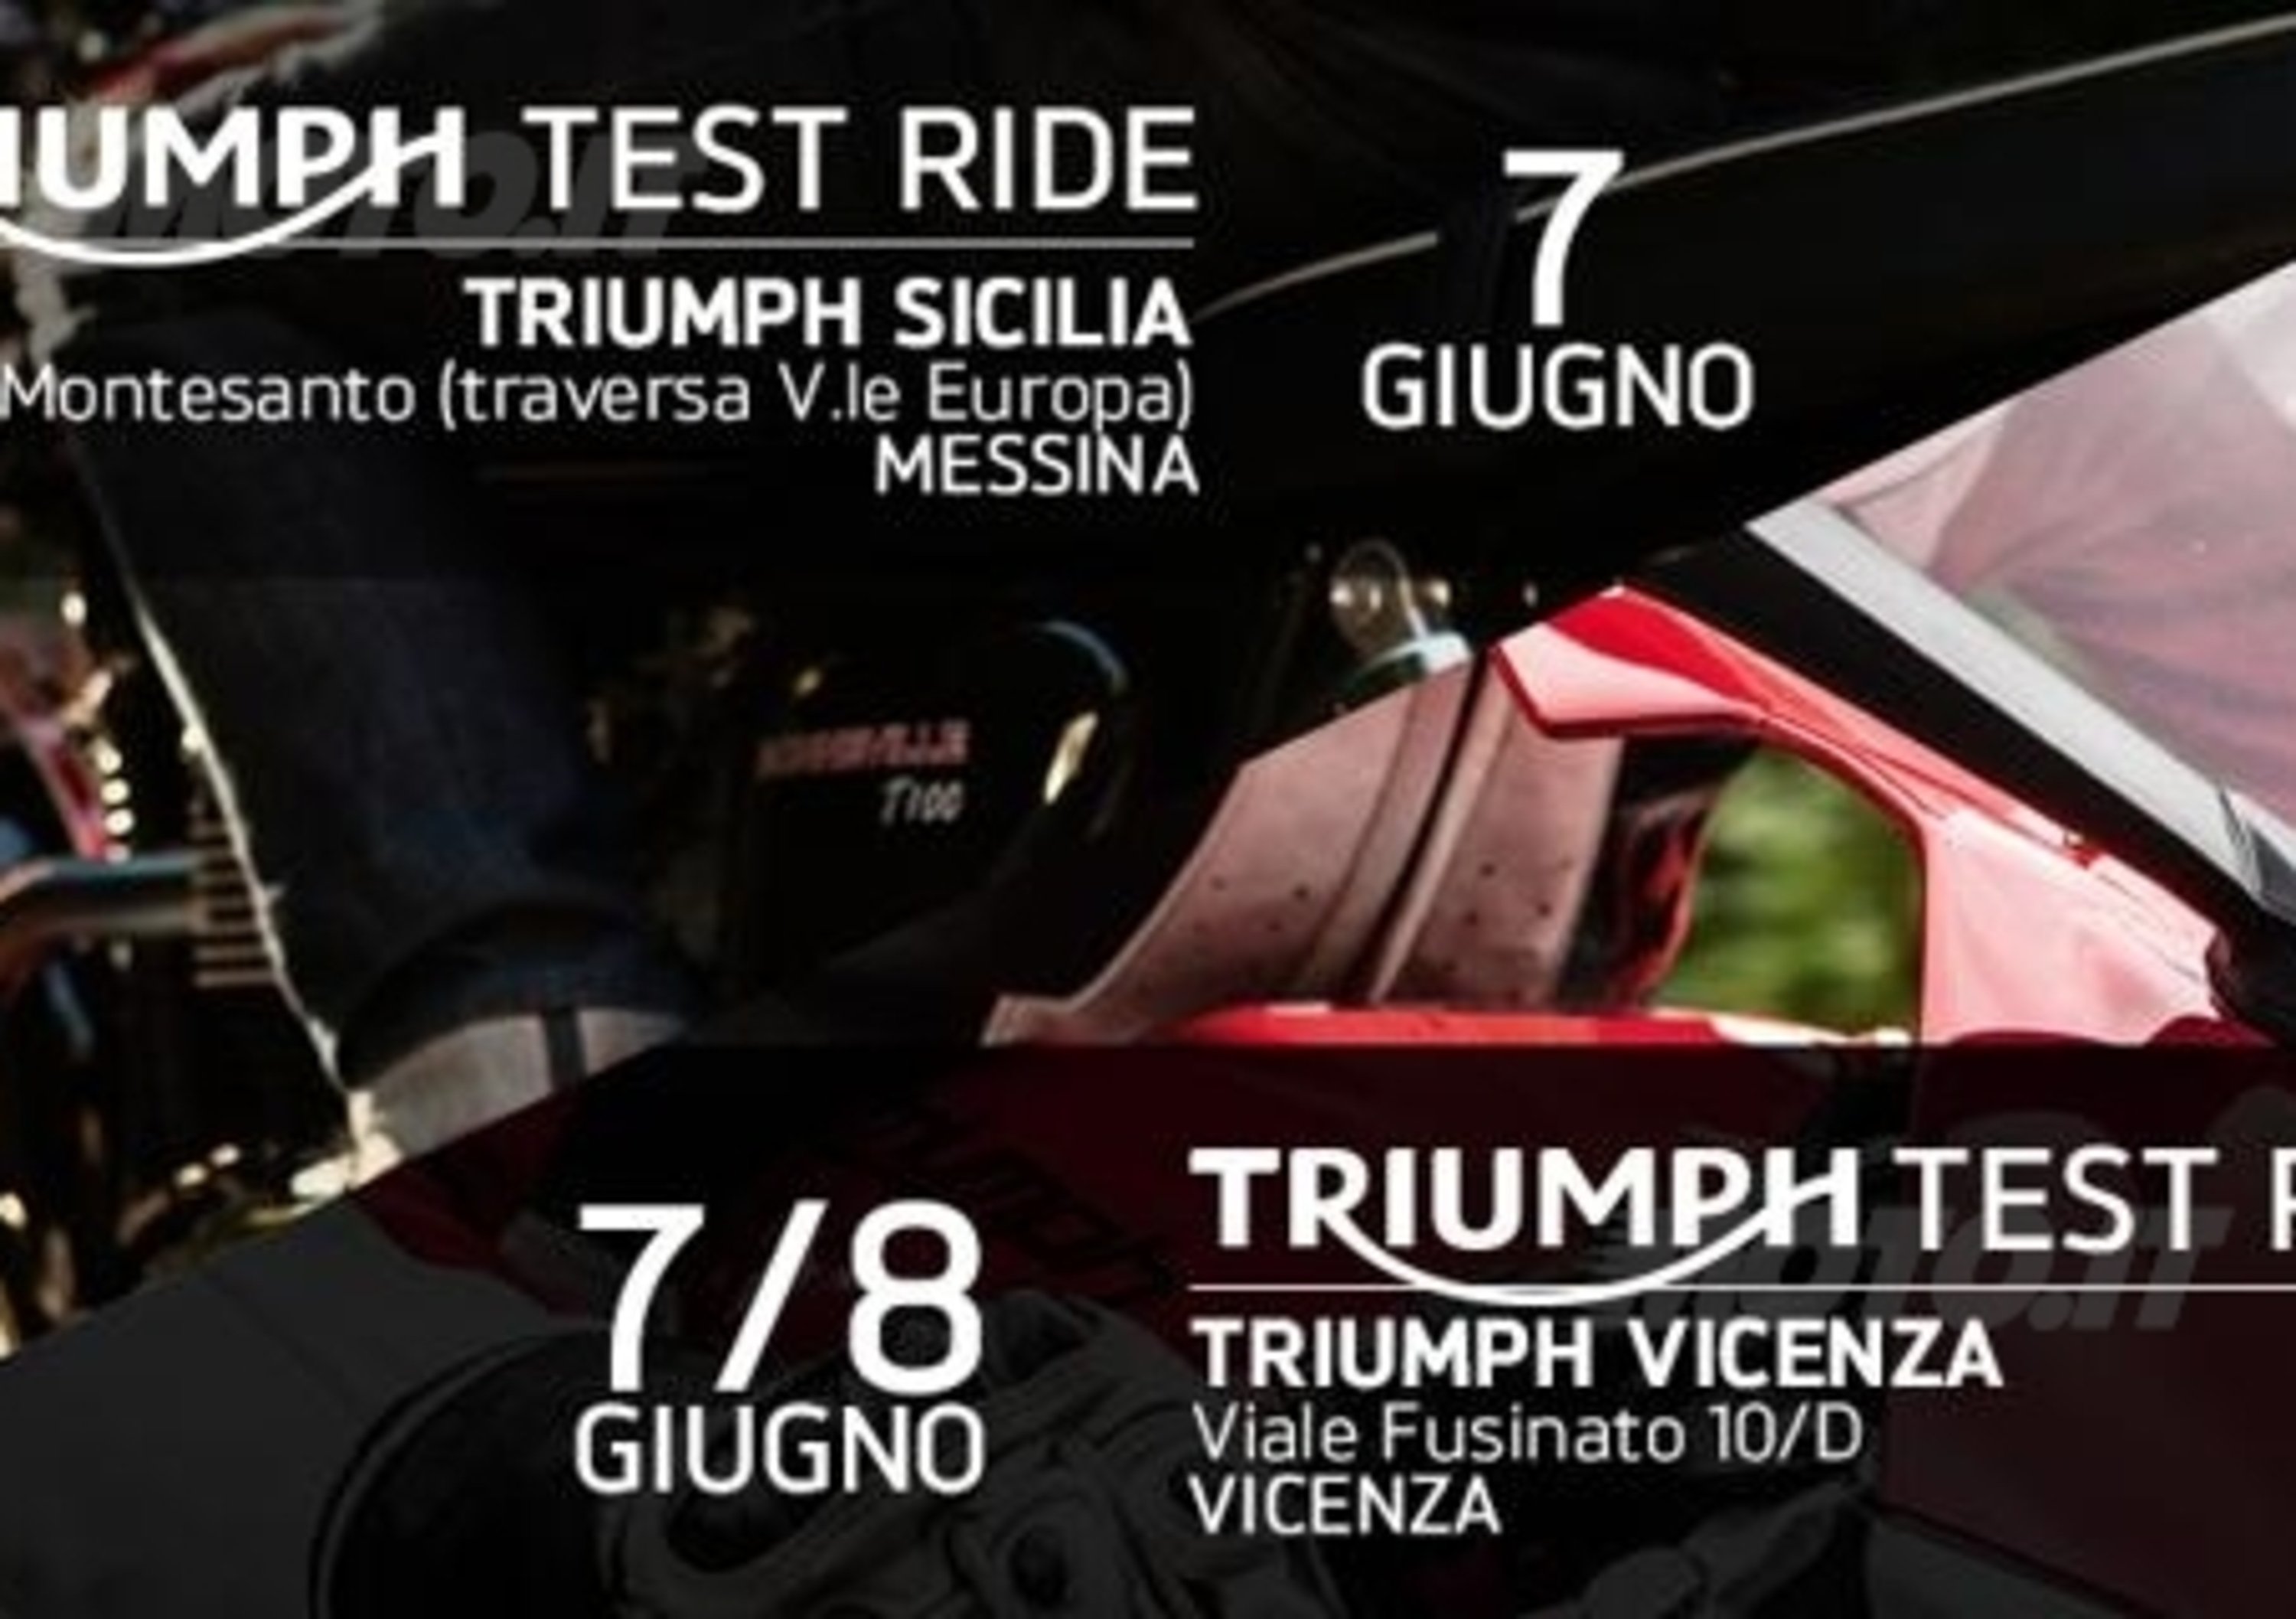 Triumph Test Ride, questo fine settimana a Vicenza e Messina